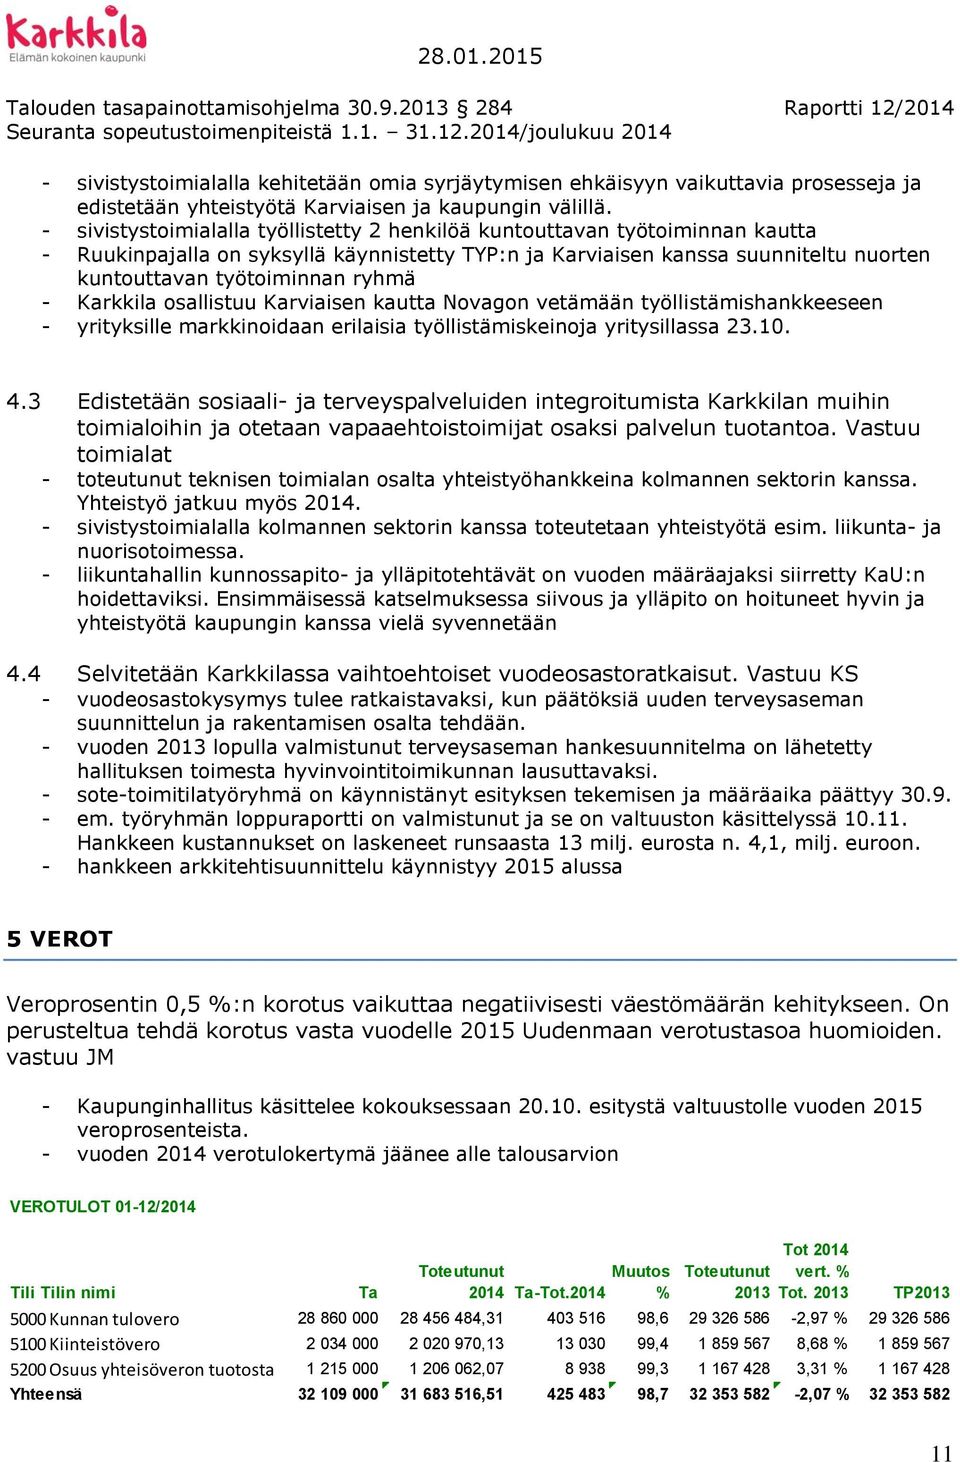 - Karkkila osallistuu Karviaisen kautta Novagon vetämään työllistämishankkeeseen - yrityksille markkinoidaan erilaisia työllistämiskeinoja yritysillassa 23.10. 4.